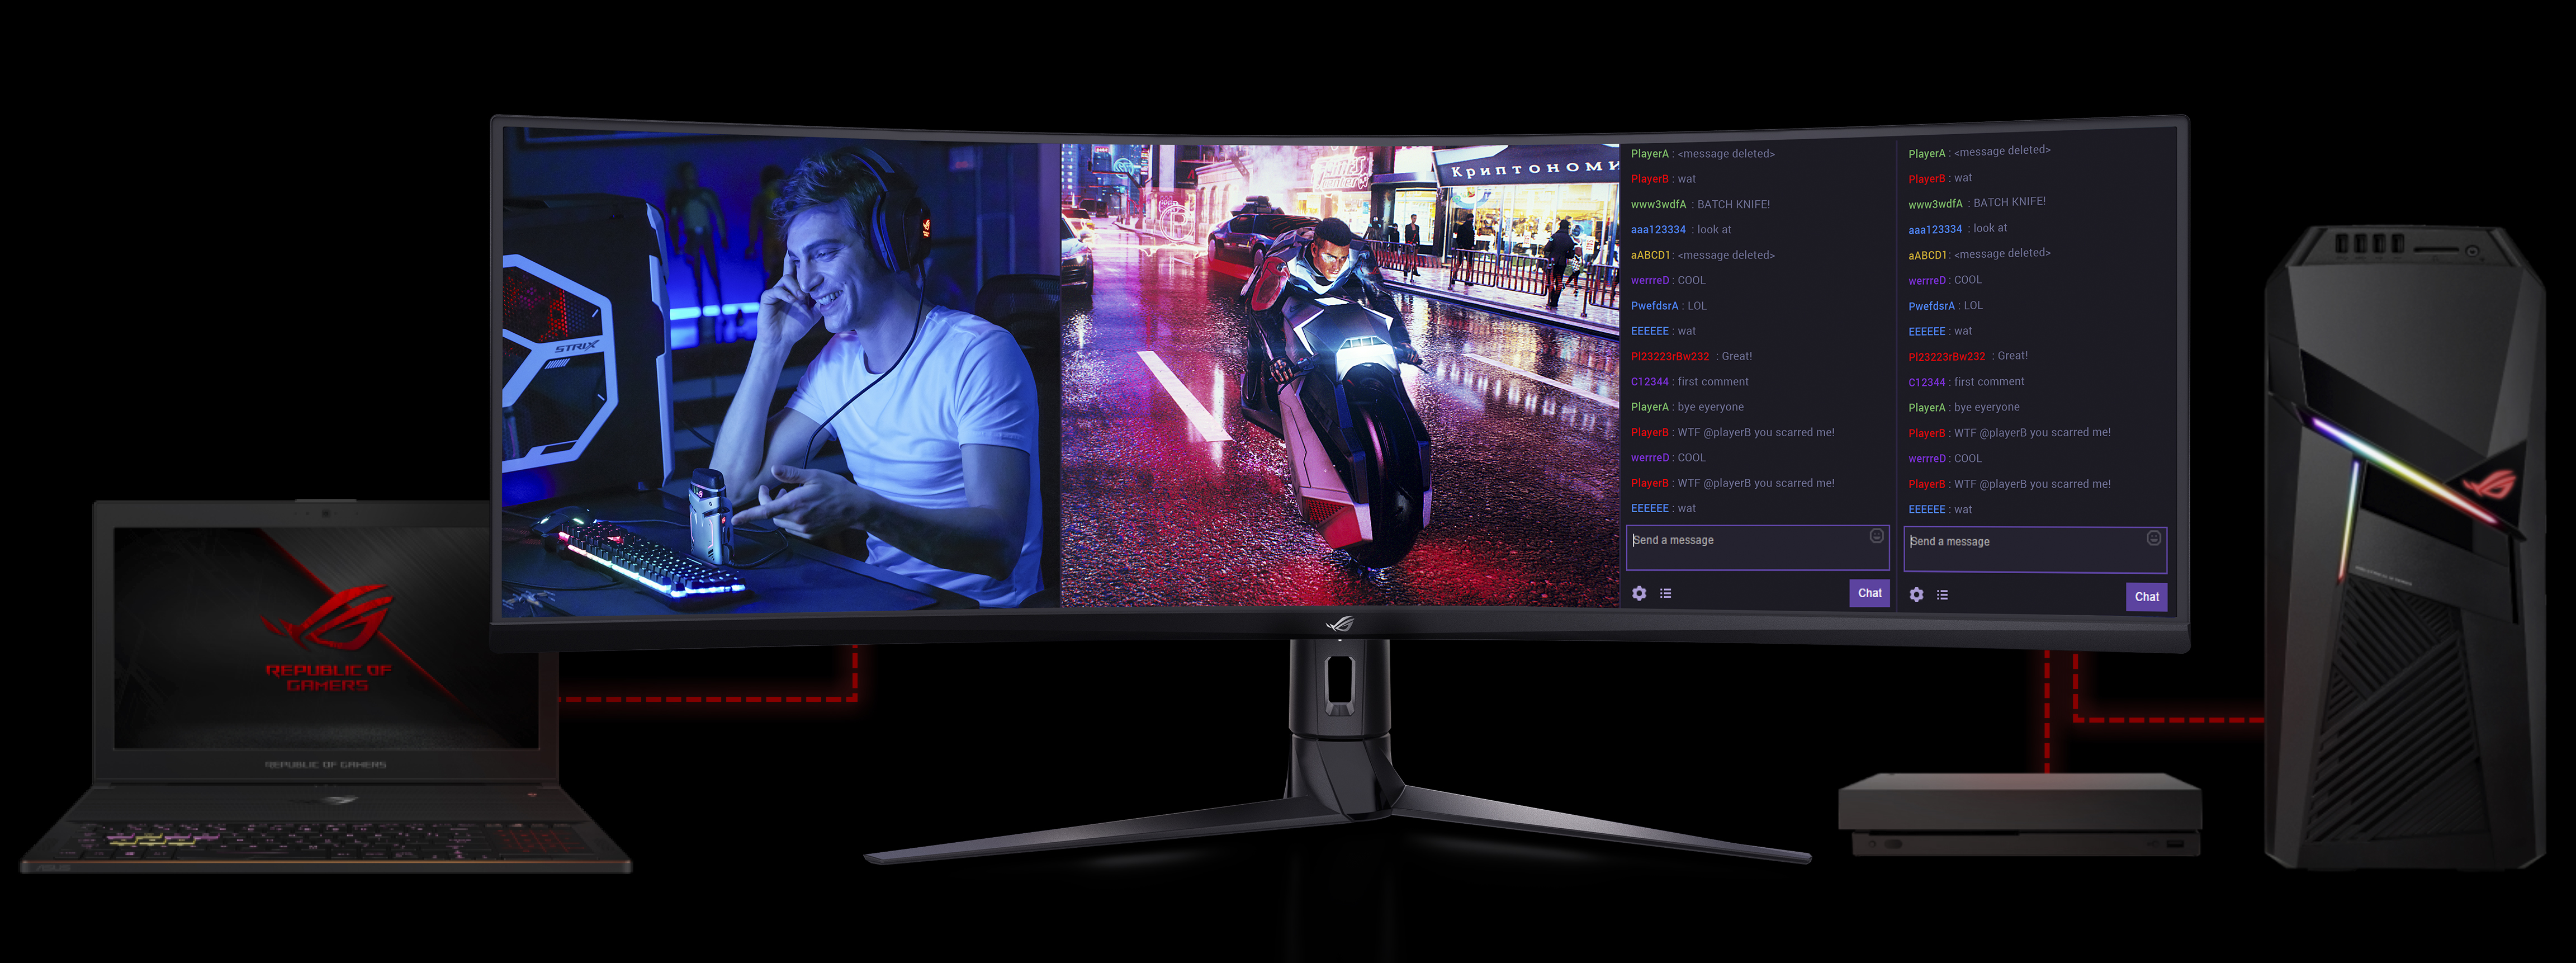 Super ultra široká obrazovka s funkcí Obraz vedle obrazu u monitoru Asus XG49VQ